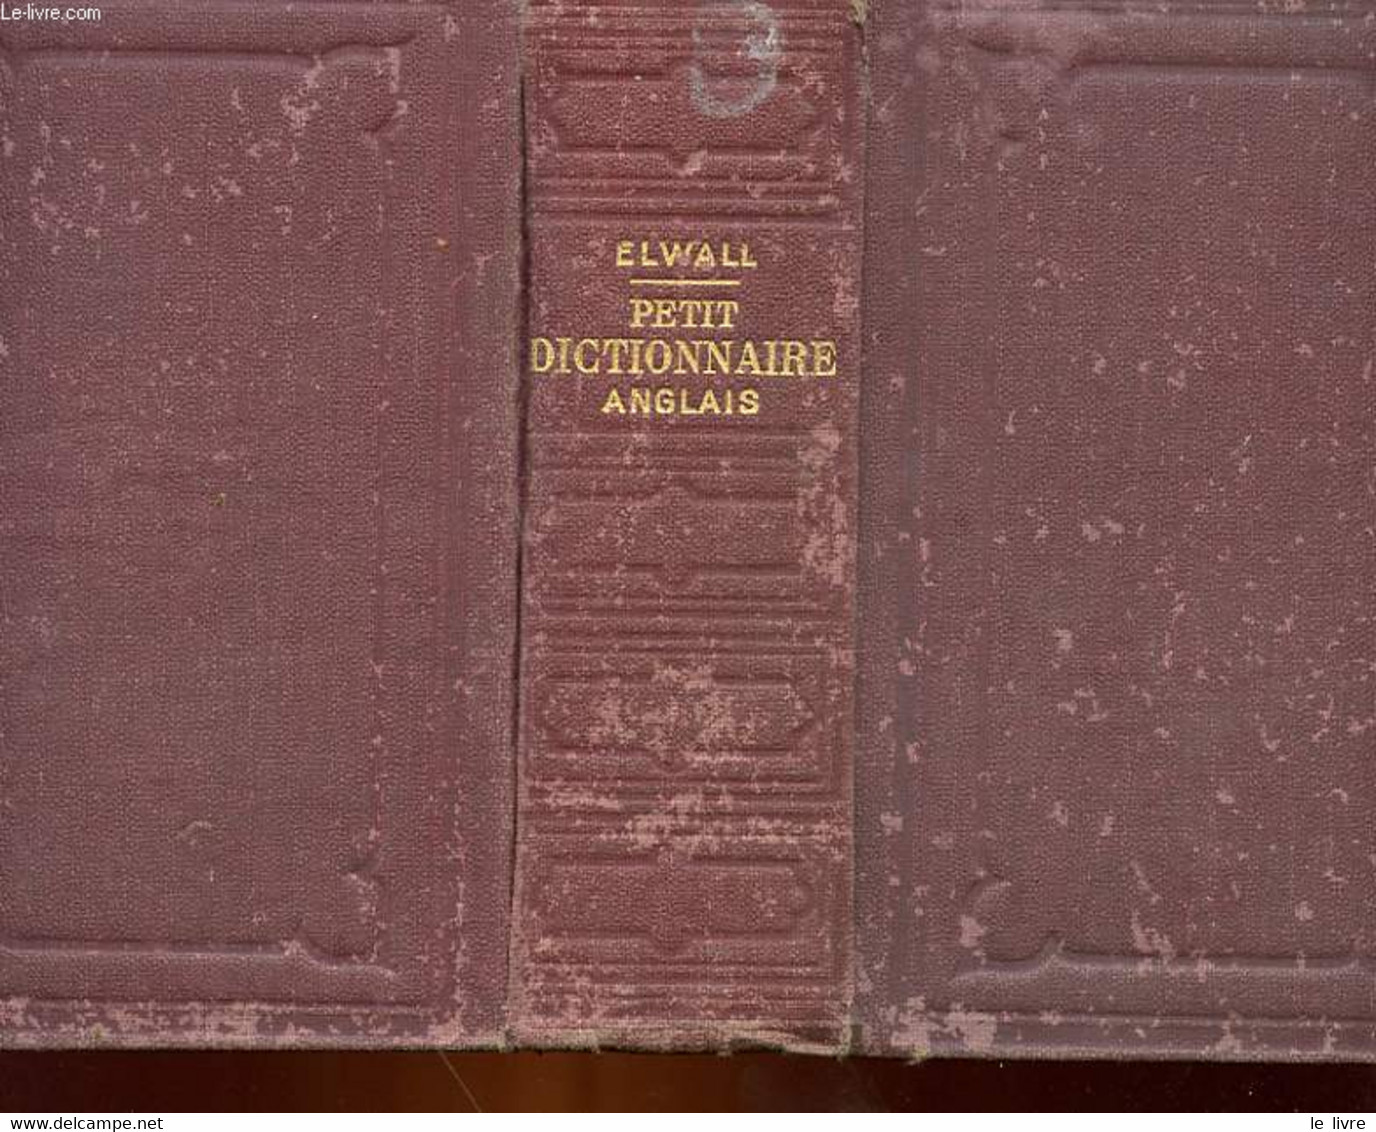 PETIT DICTIONNAIRE ANGLAIS-FRANCAIS ET FRANCAIS-ANGLAIS A L'USAGE DES COURS ELEMENTAIRES - ELWALL ALFRED - 1926 - Dizionari, Thesaurus